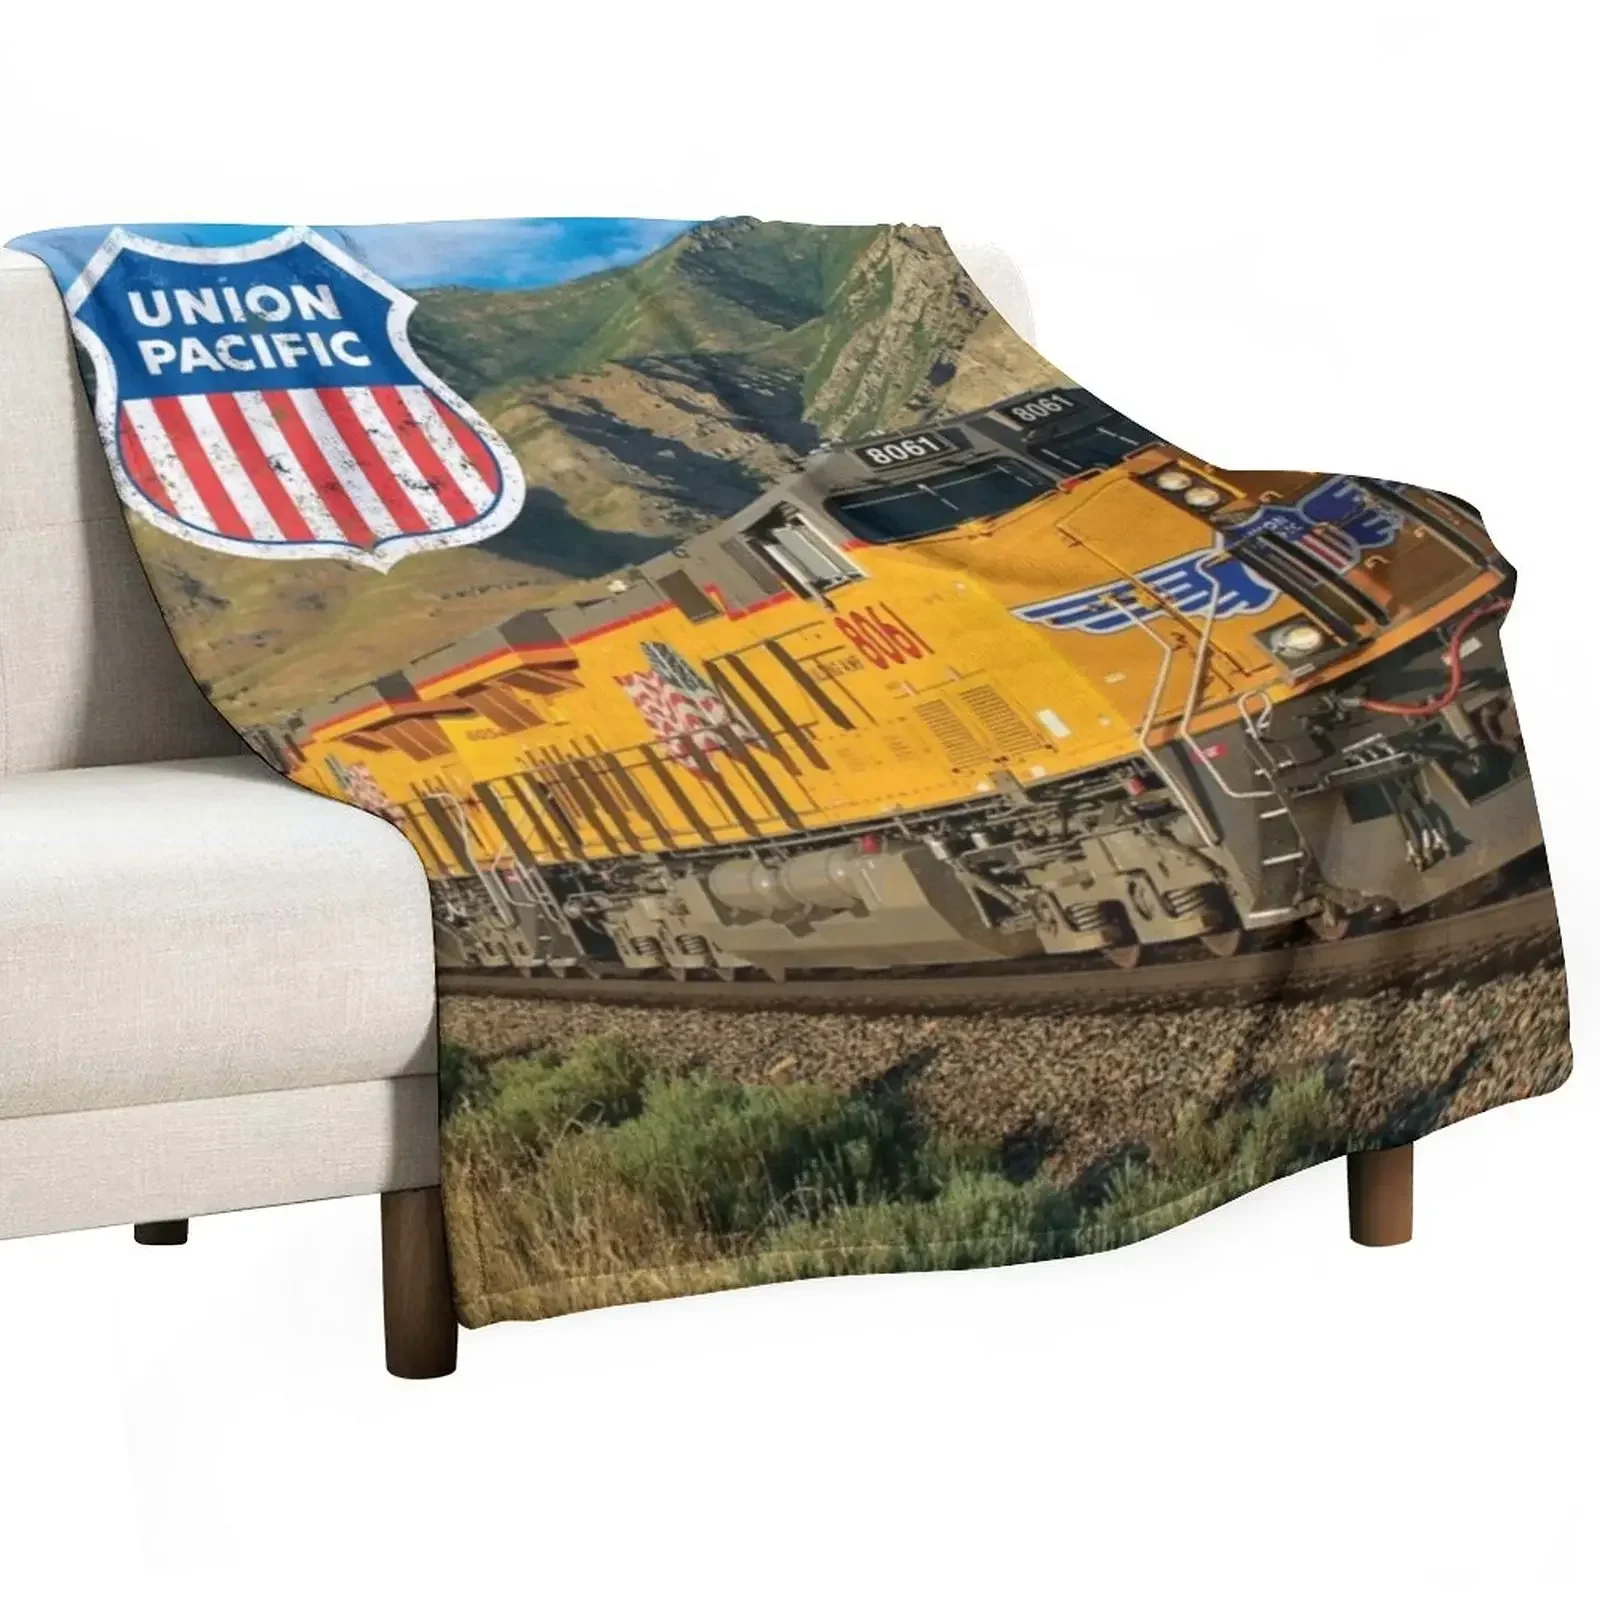 

Union Pacific (состаренное) одеяло, индивидуальный подарок, мягкие кровати, клетчатые одеяла